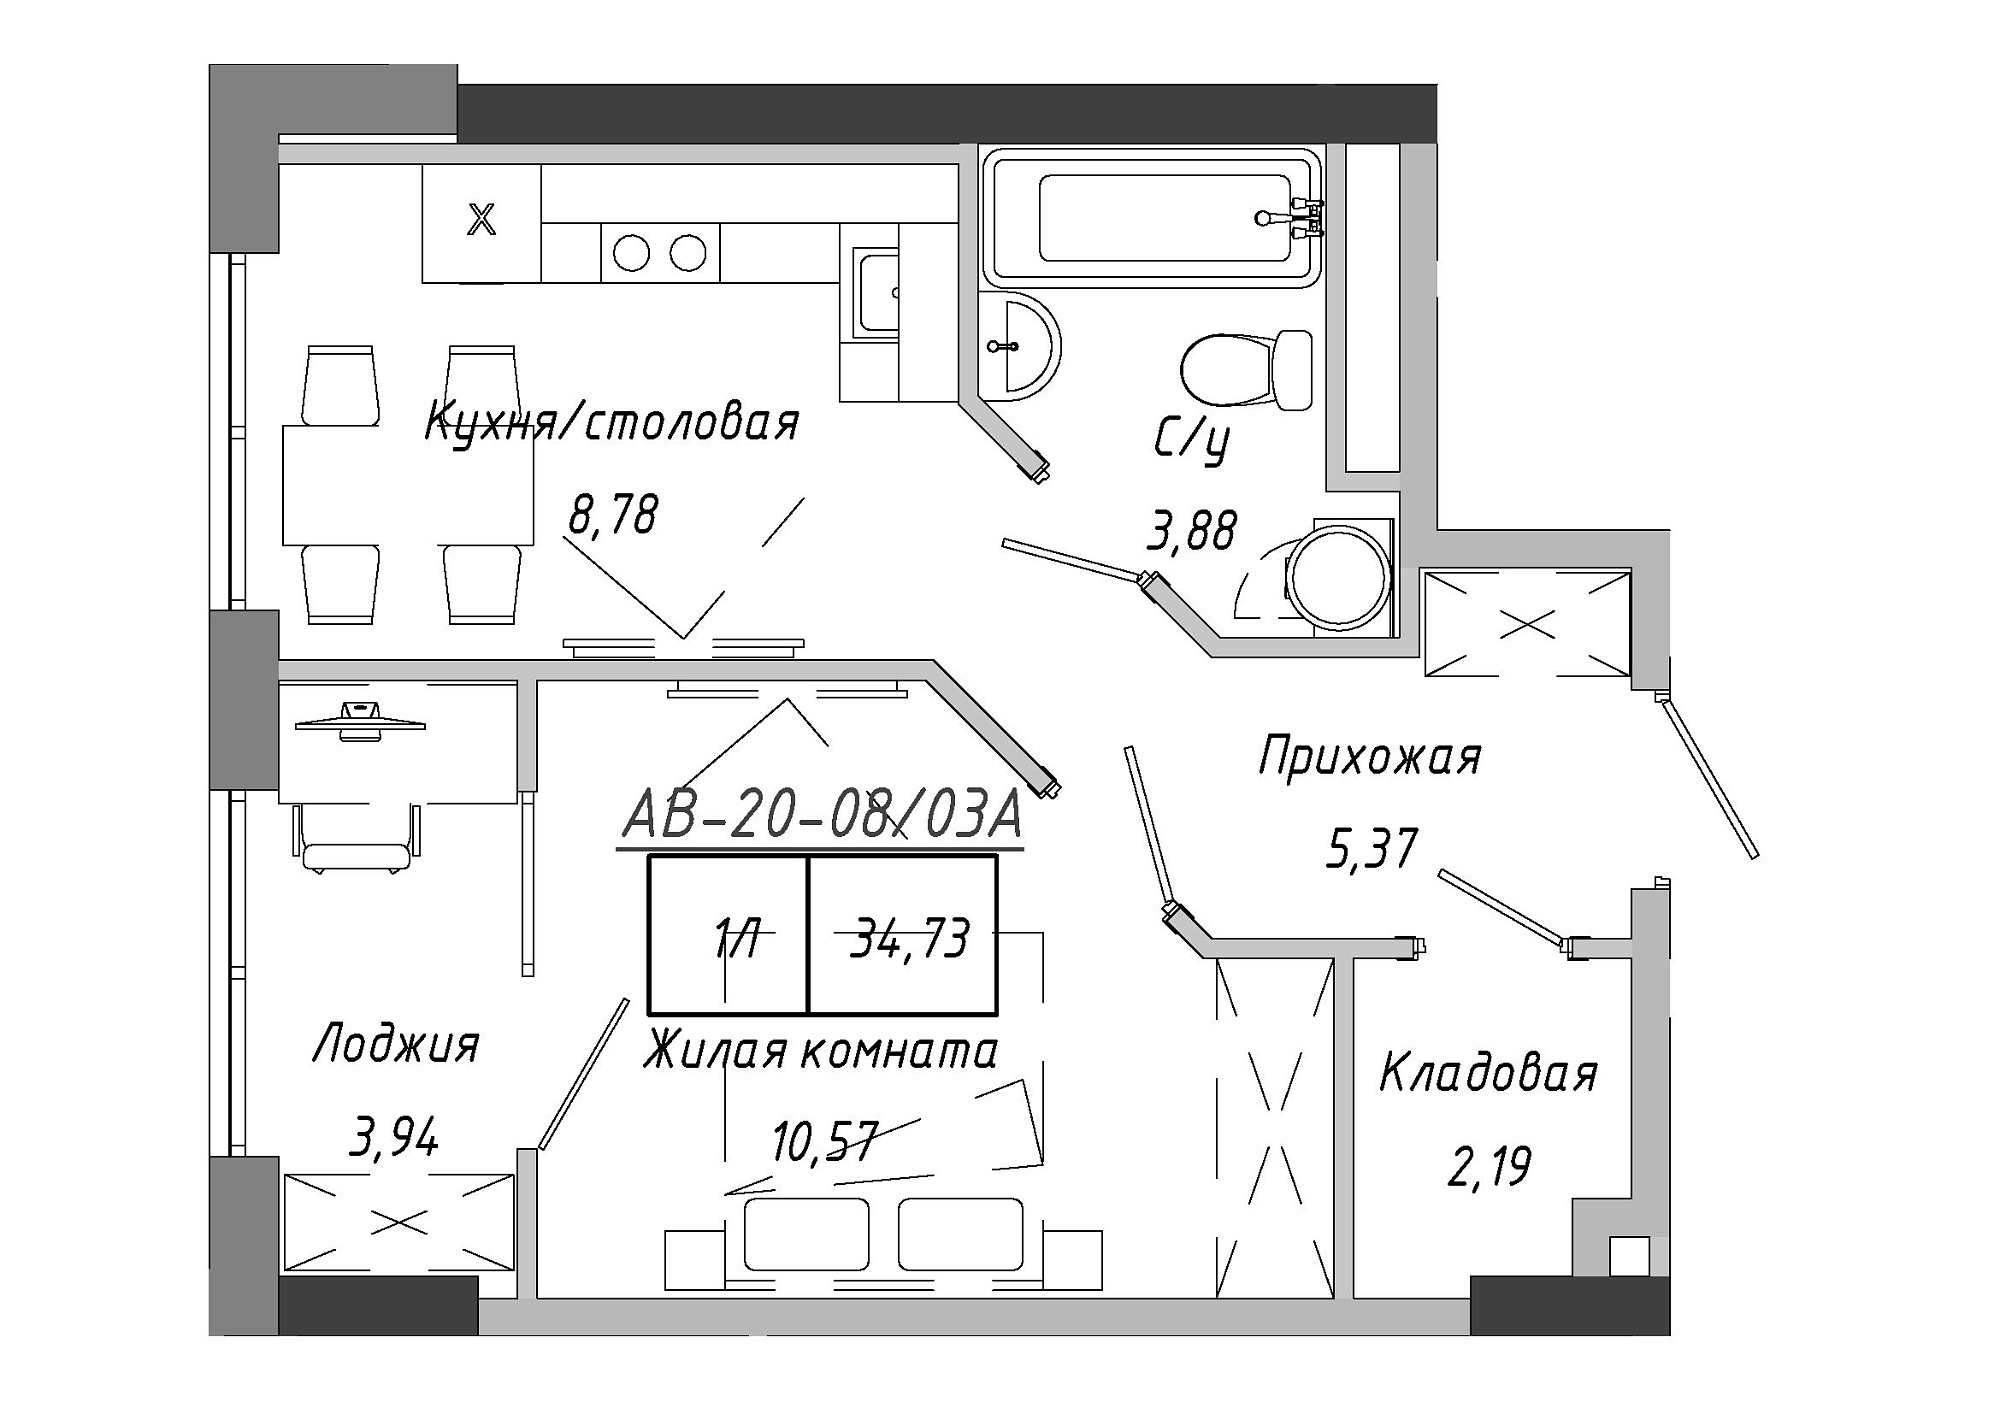 Планировка 1-к квартира площей 35.26м2, AB-20-08/0003а.